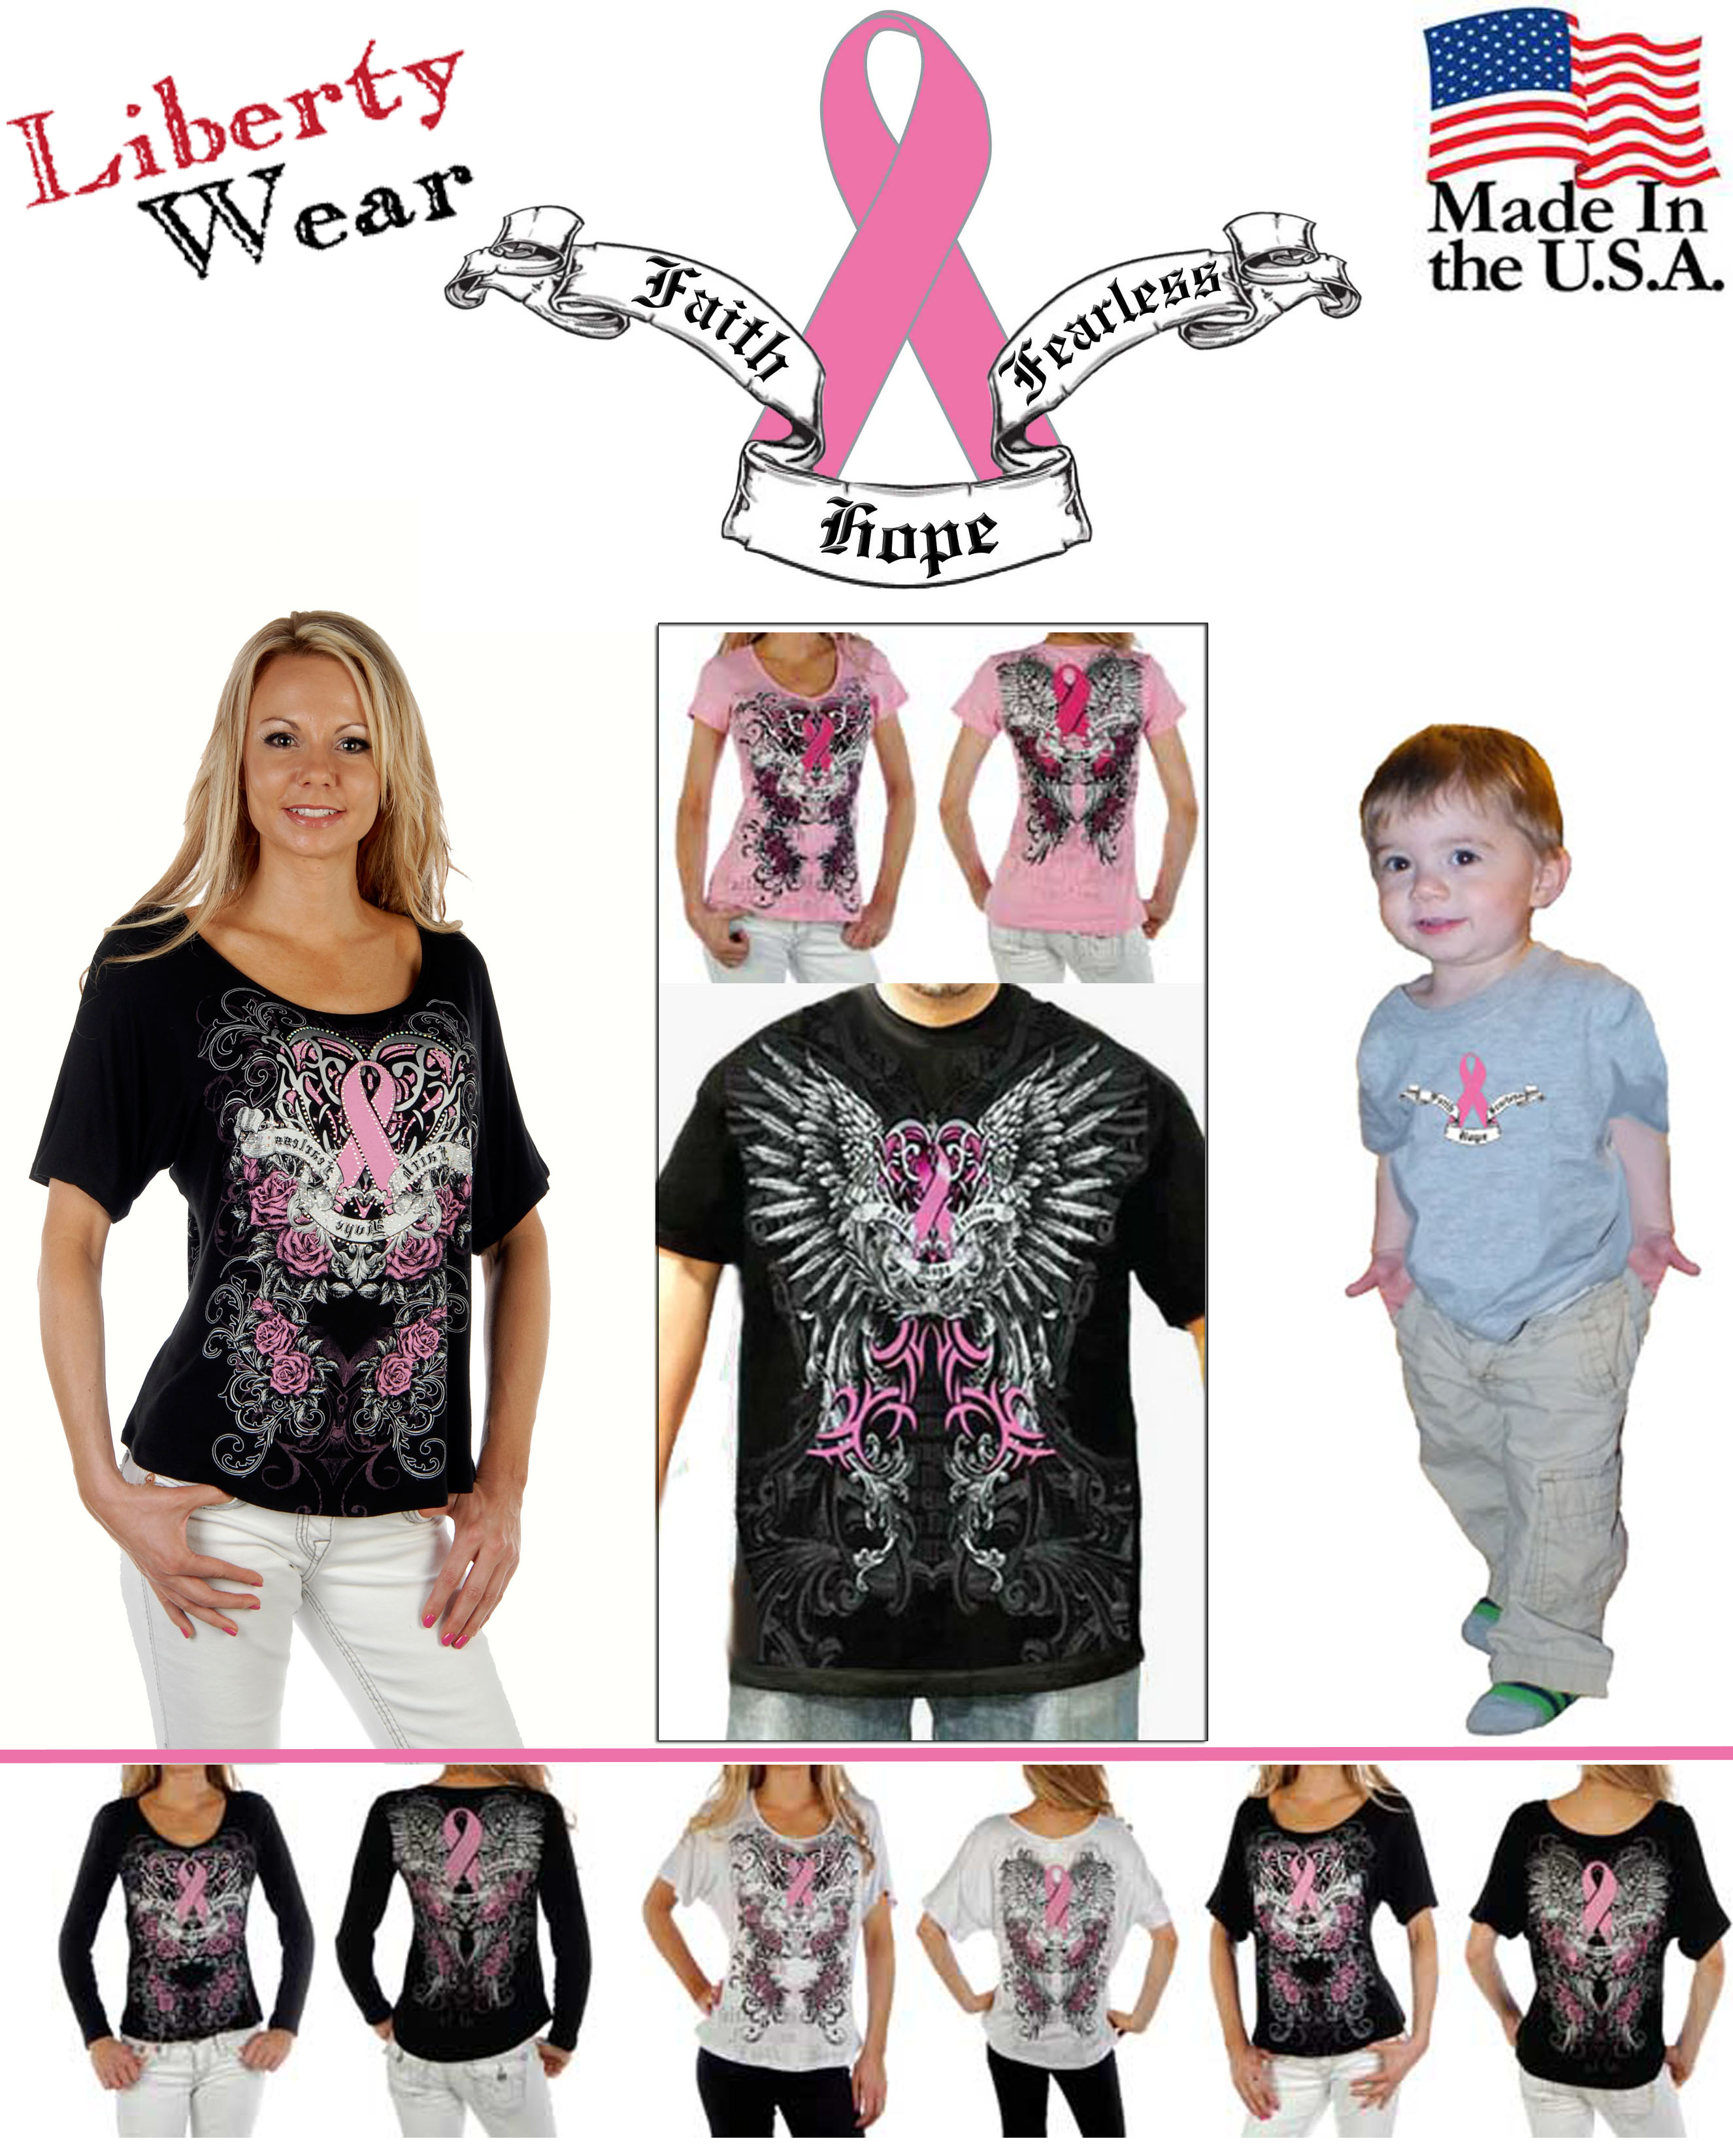 Liberty Wear Cancer Awareness Shirts